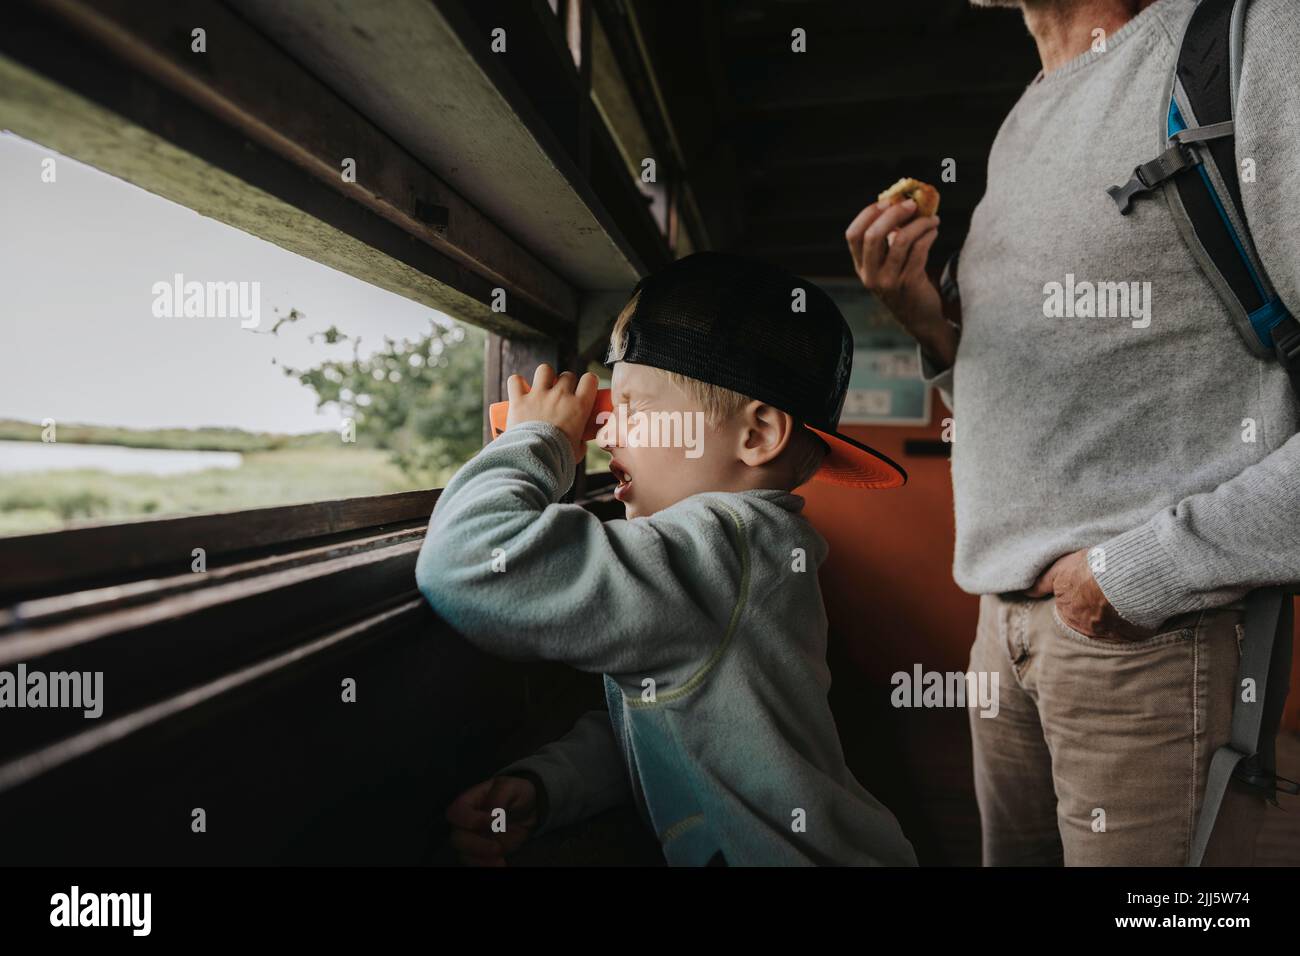 Boy wearing cap looking through binoculars Stock Photo